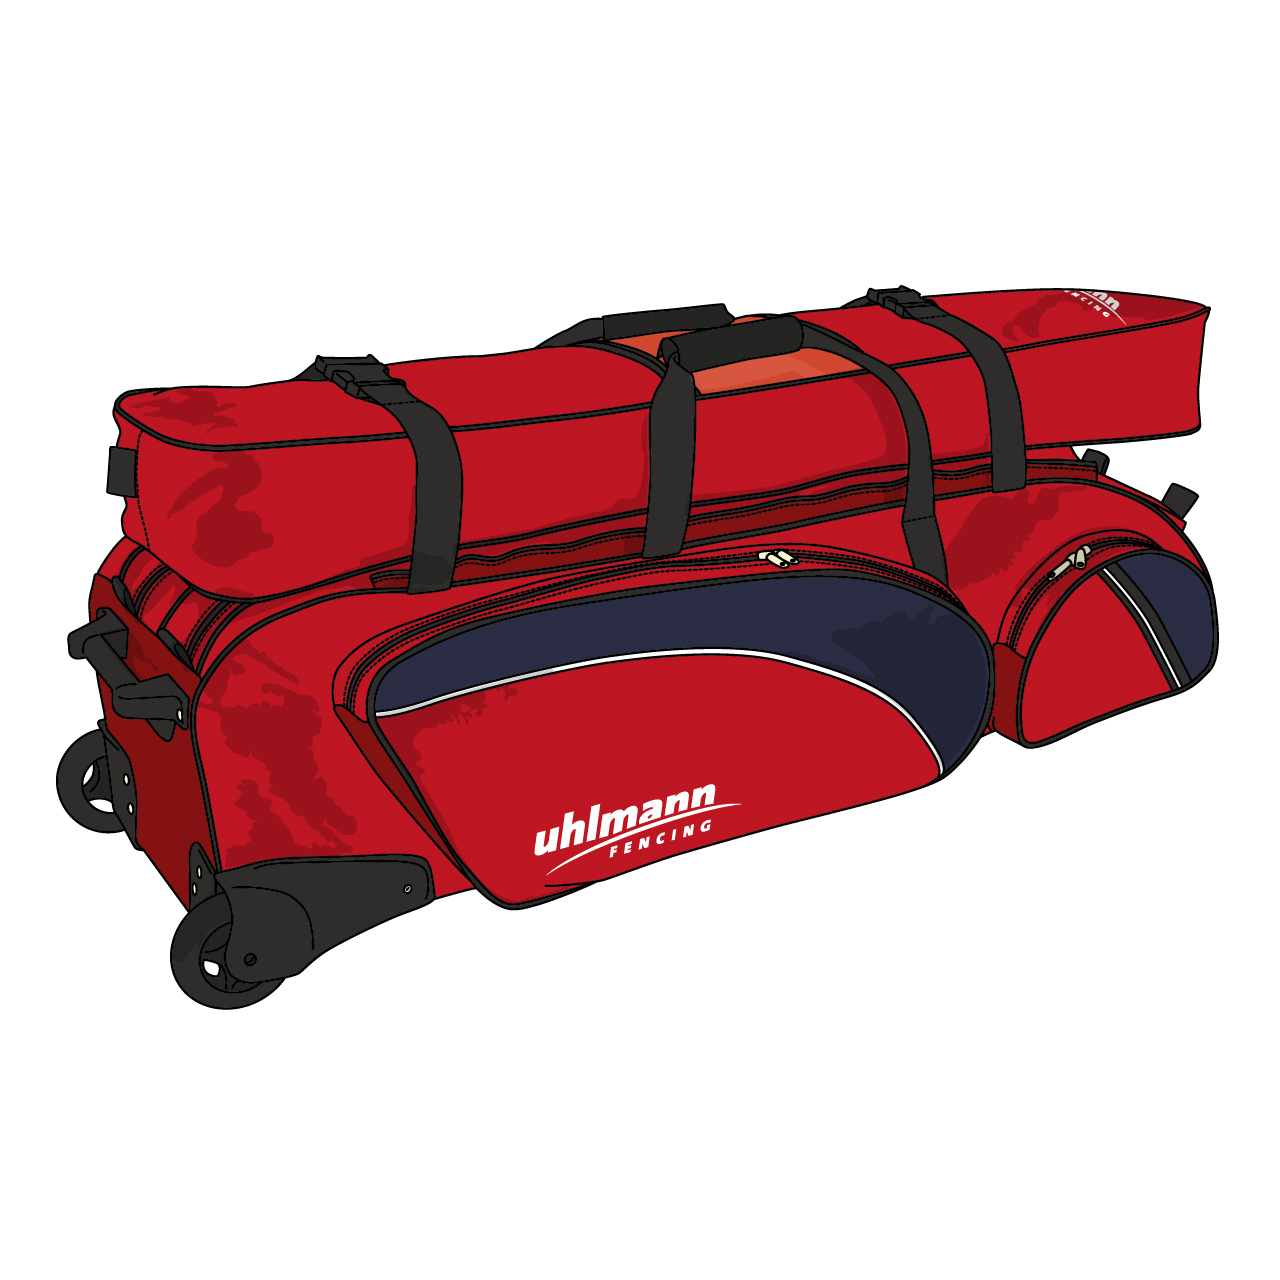 Rollbag "Jumbo Spezial", 2 Hauptfächer, 3 Vordertaschen, 1 Aufsatztasche